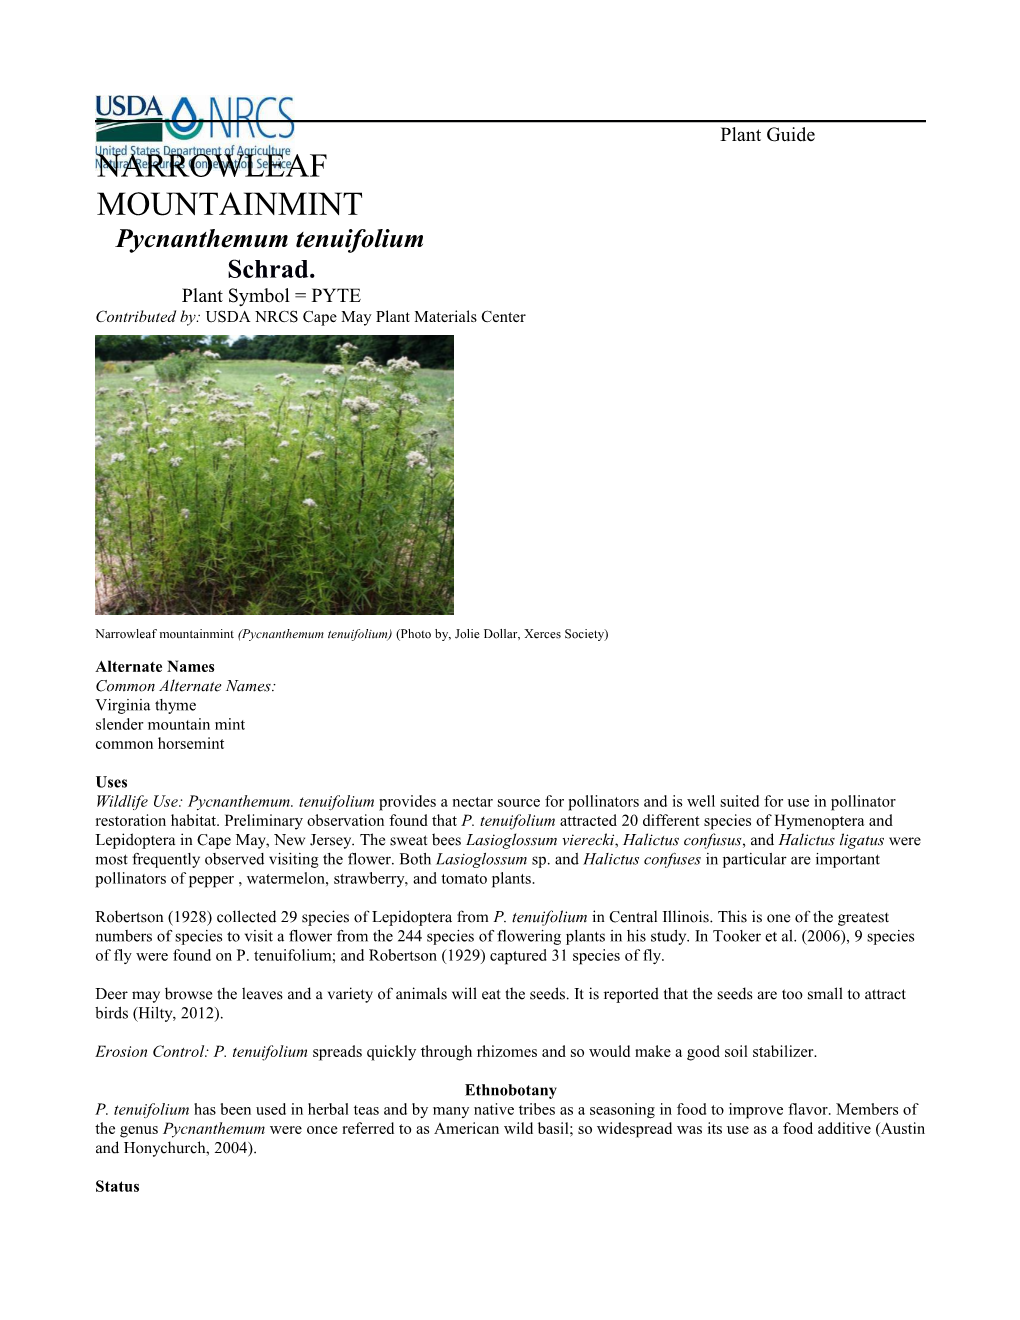 Narrowleaf Mountainmint (Pycnanthemum Tenuifolium)